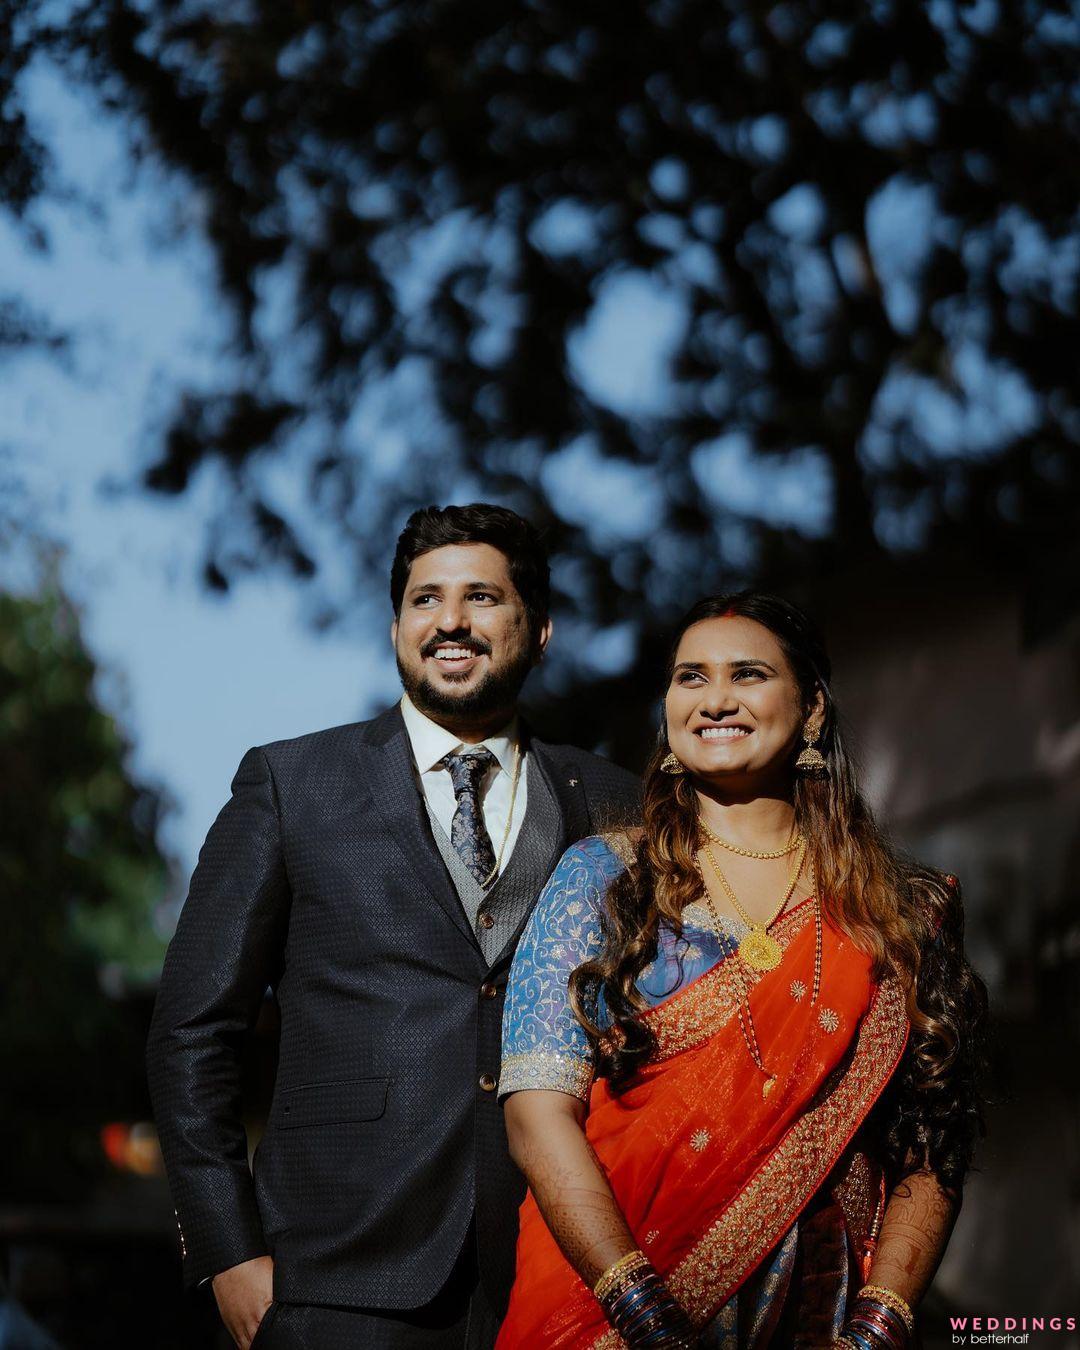 40+ Stylish Maharashtrian Bridal Looks That We Have A Crush On! | Wedding  couple poses photography, Indian wedding poses, Wedding photoshoot poses